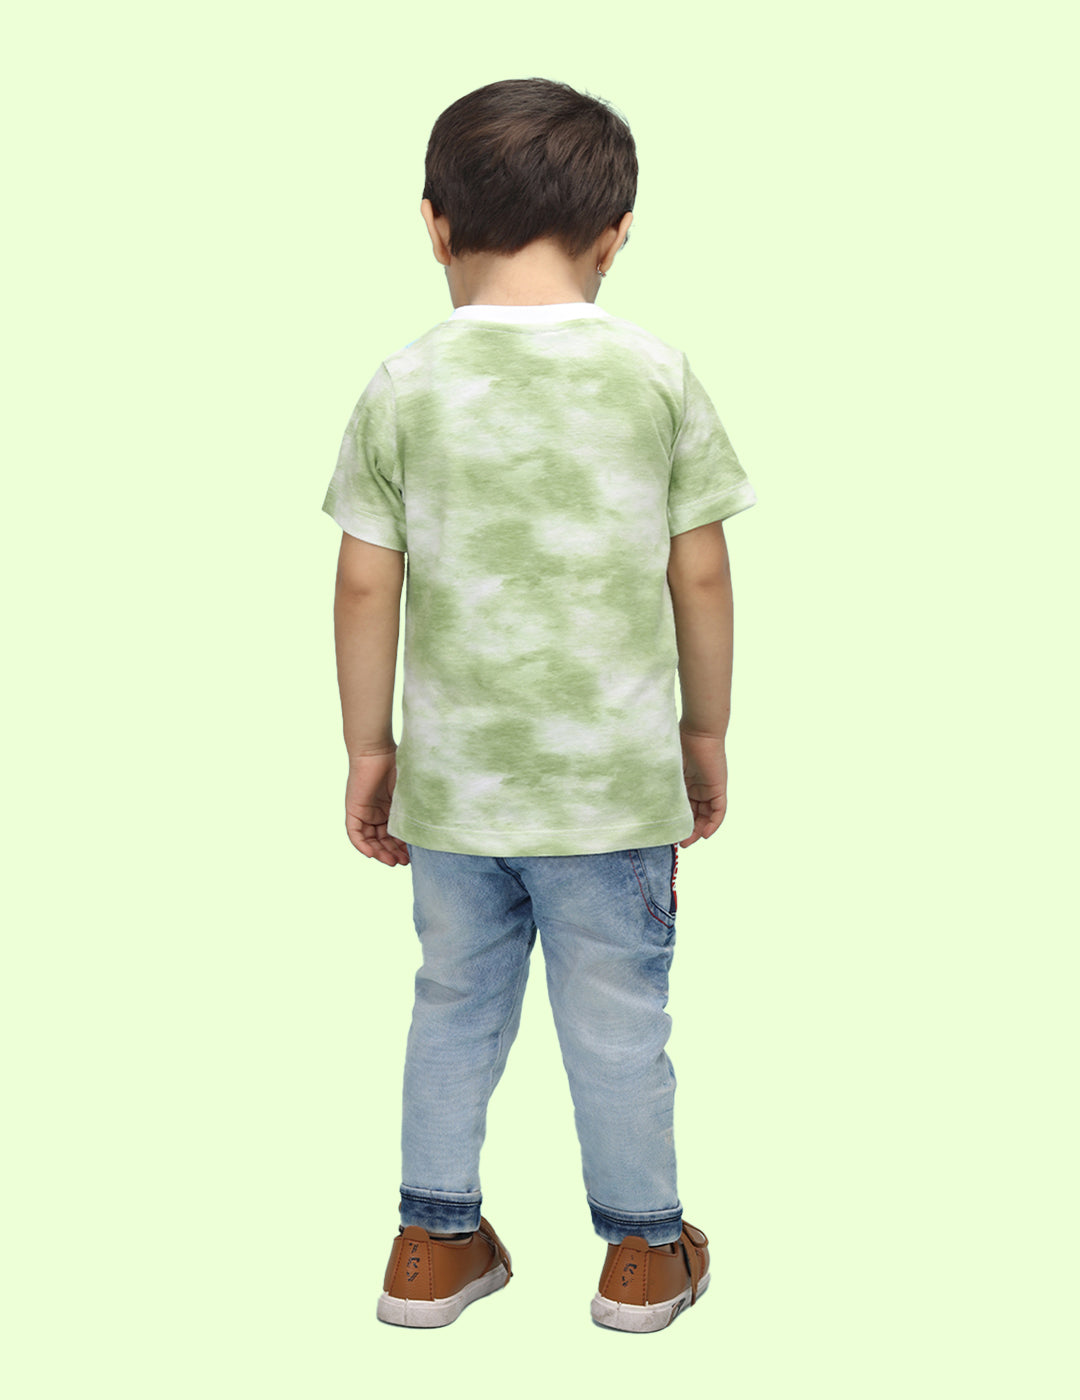 Nusyl infants green summer printed Tie & Dye tshirt.